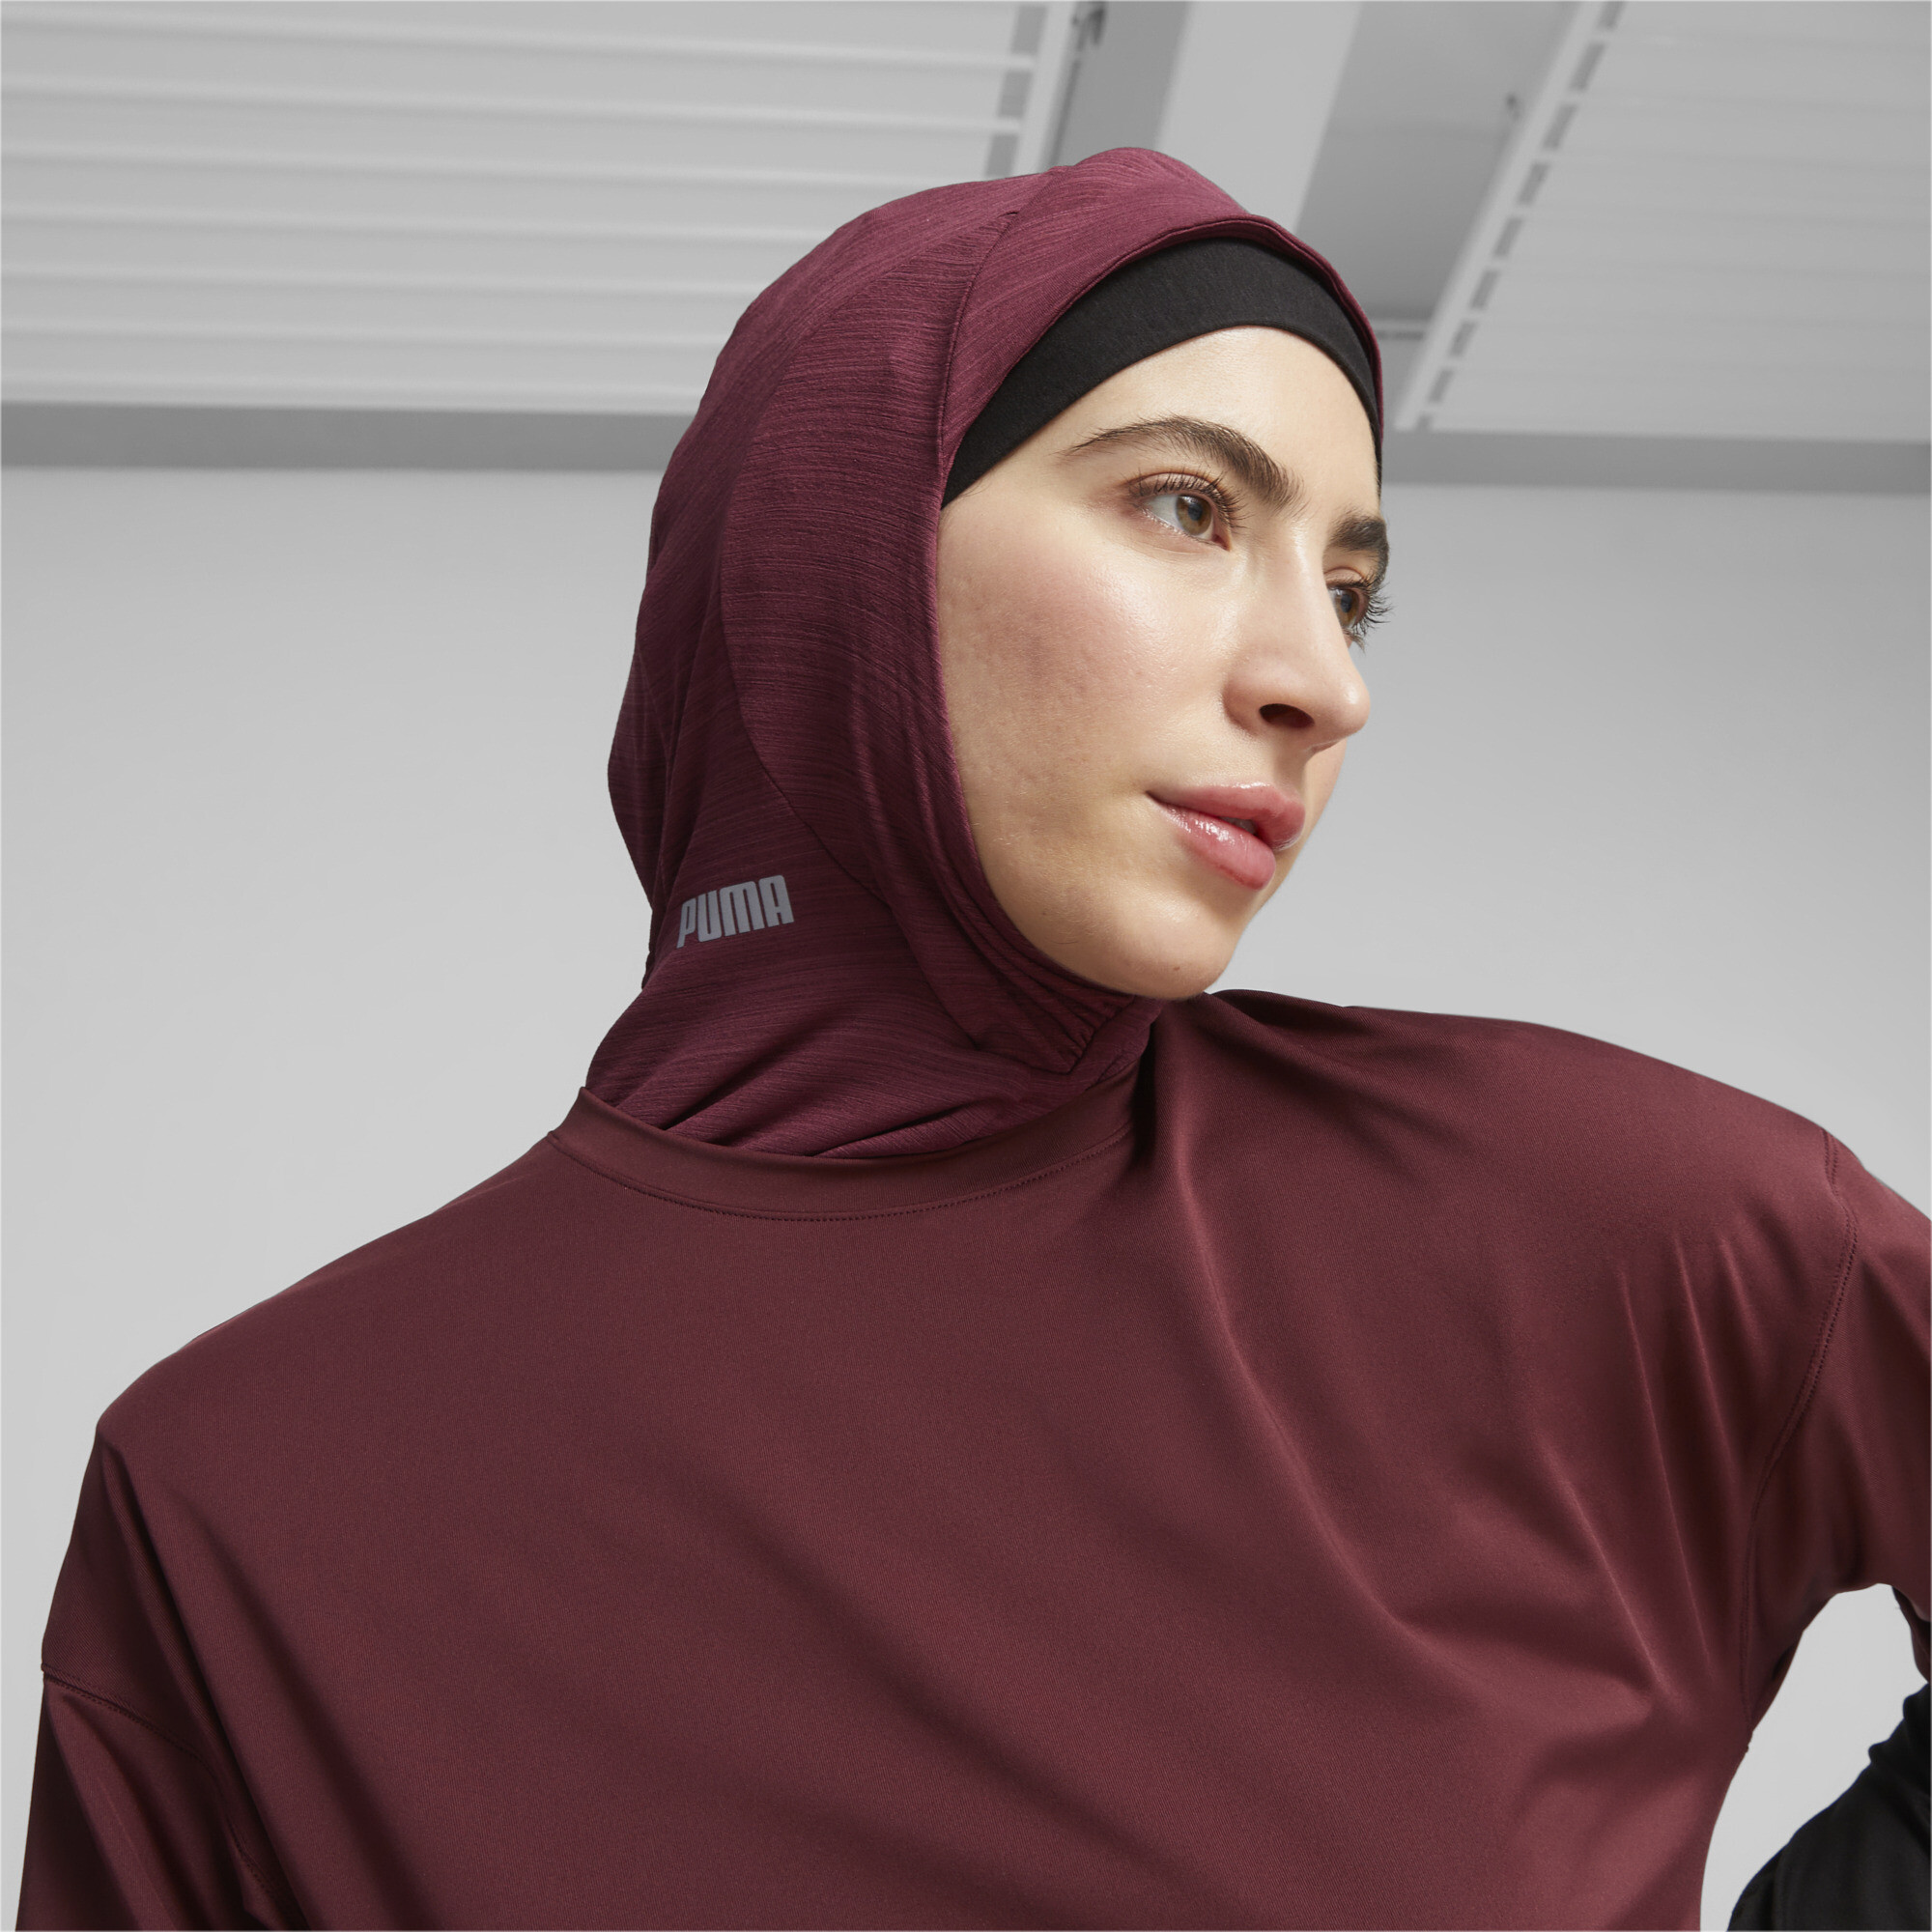 Women's Puma Sports Running Hijab, Red, Size M, Accessories